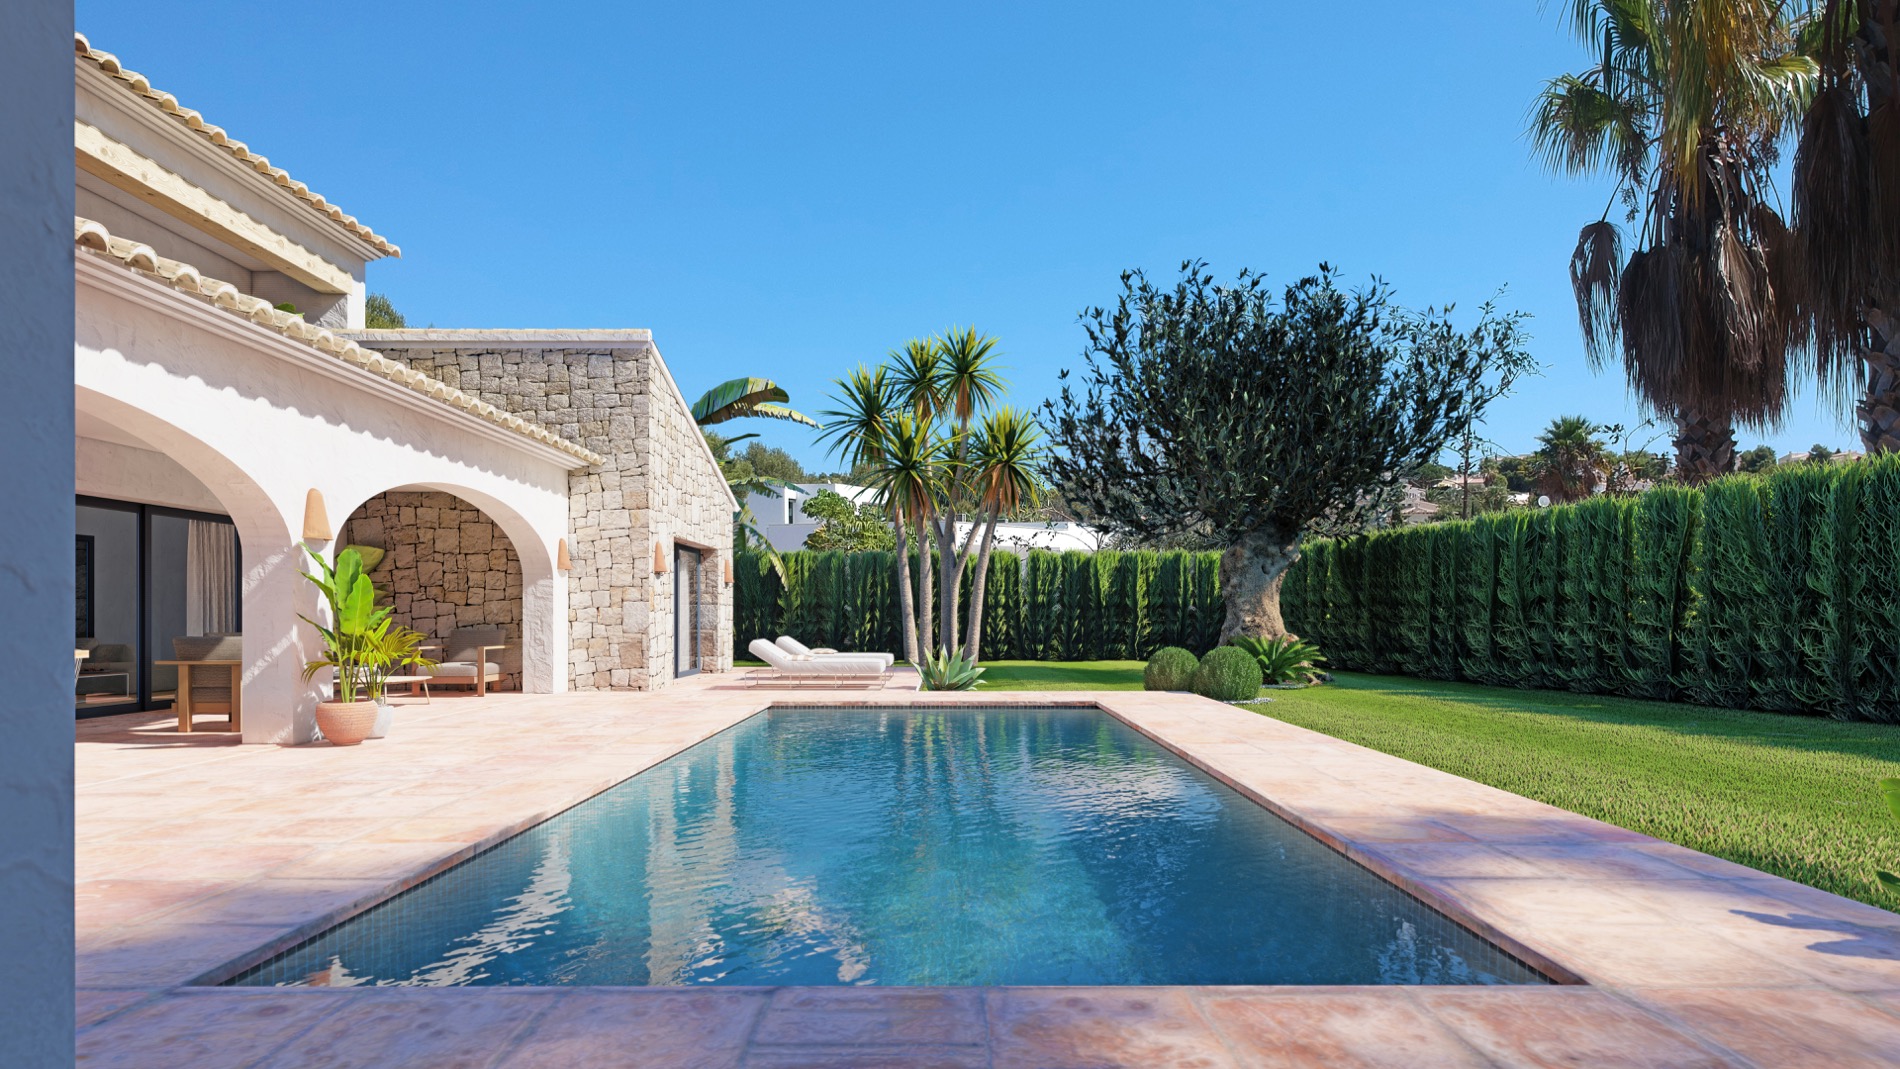 Nieuwbouw villa in mediterrane stijl te koop in La Cala Javea, Costa Blanca